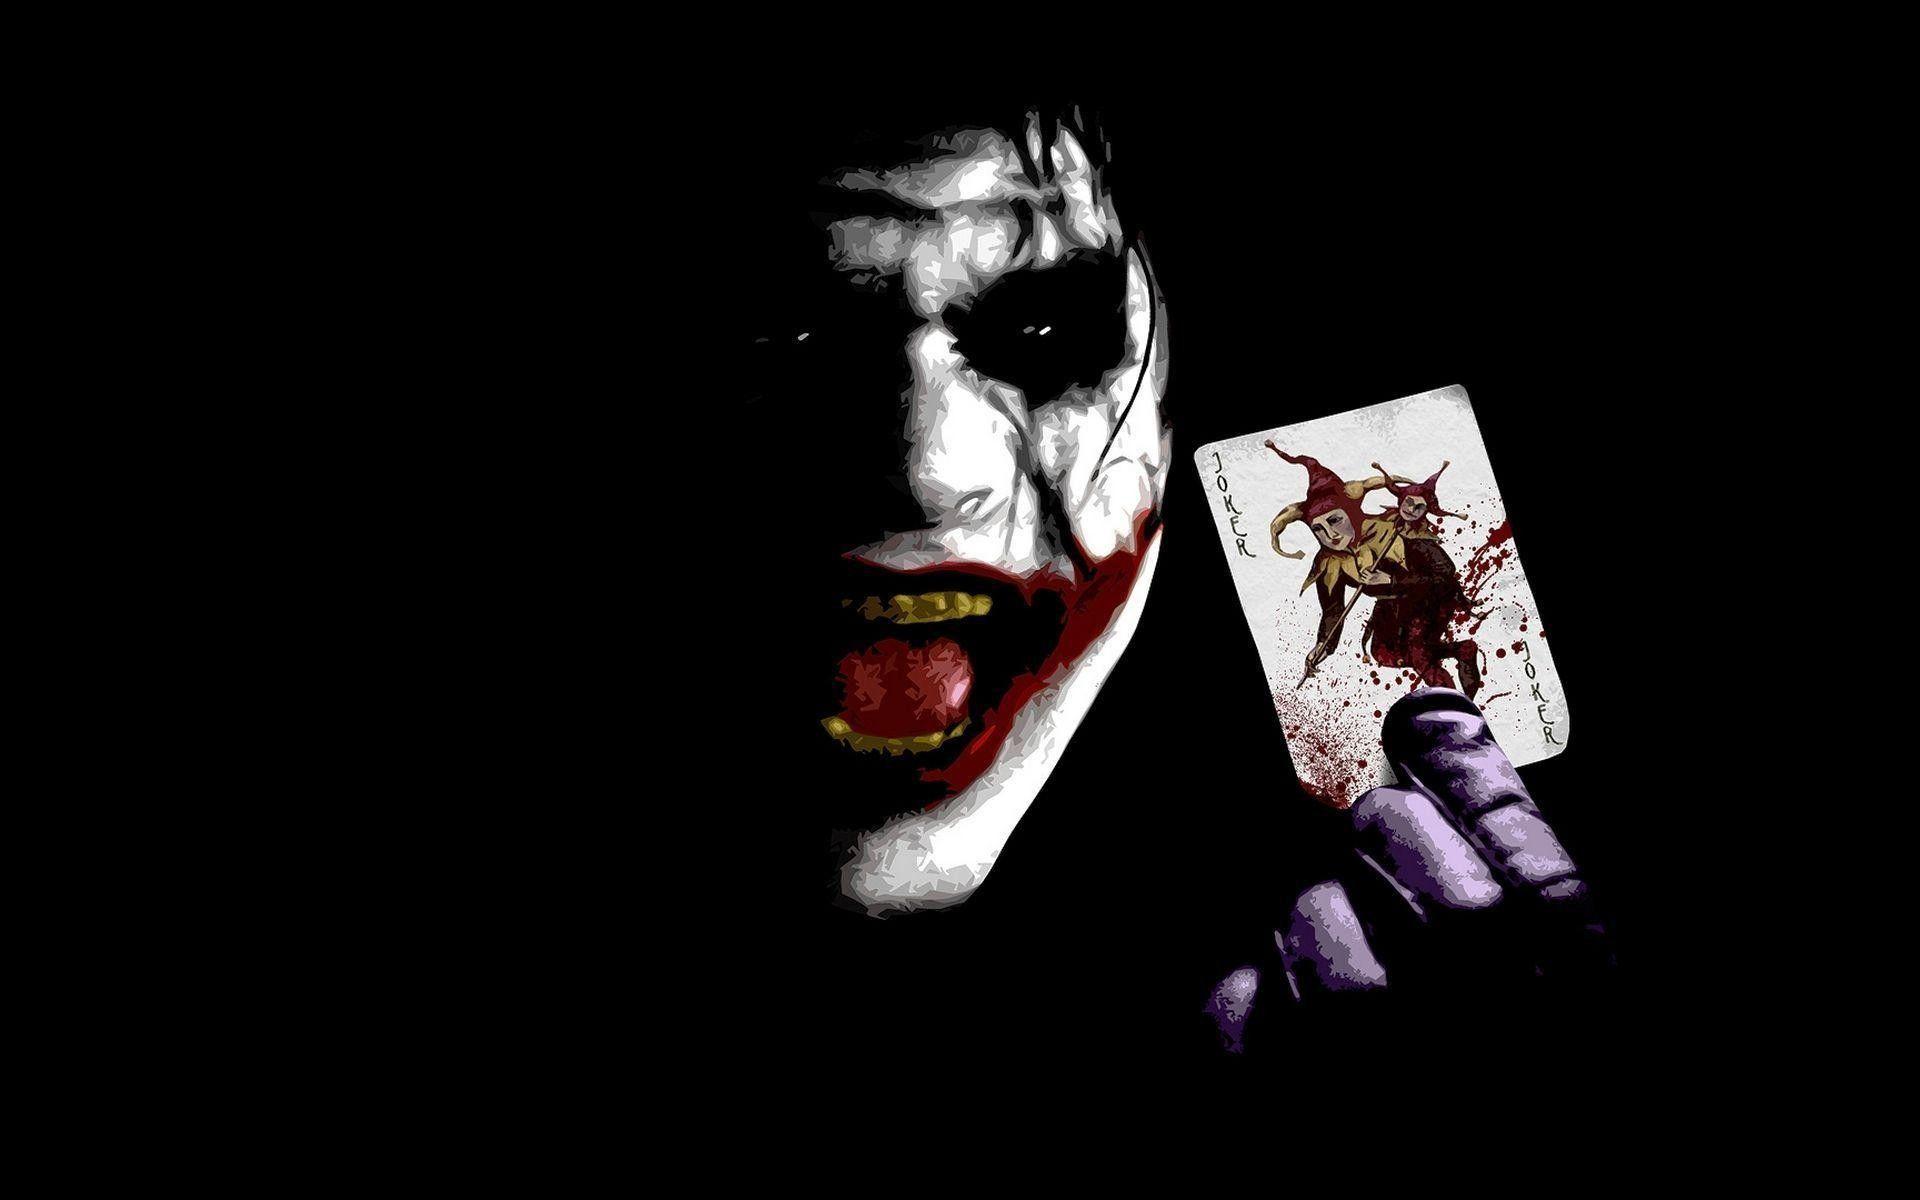 Black Joker - Get HD wallpaper | Pxfuel